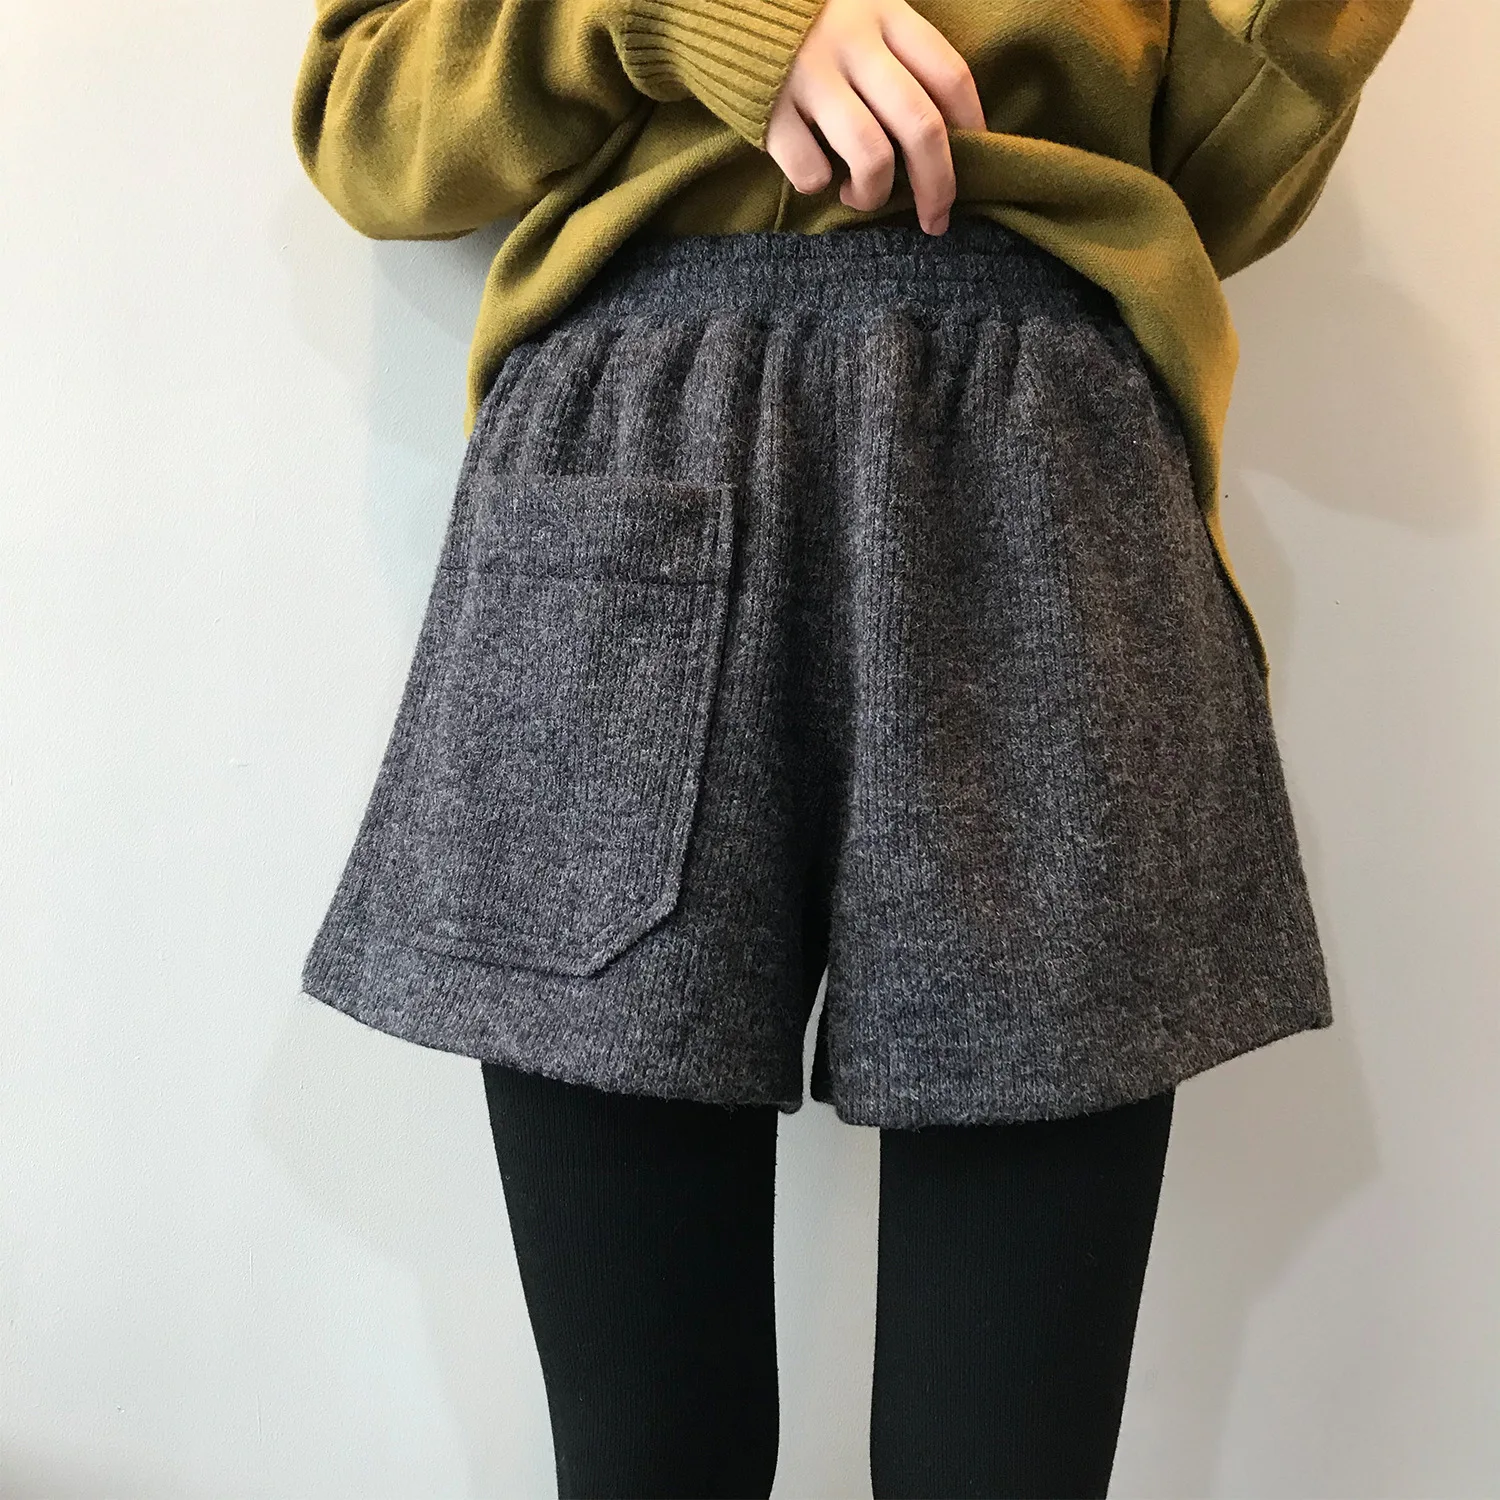 Mooirue Осень Зима трикотажные шорты для женщин Ol корейский Вязание тонкие свободные утолщение широкие ноги Свободные Леди Hotpant низ